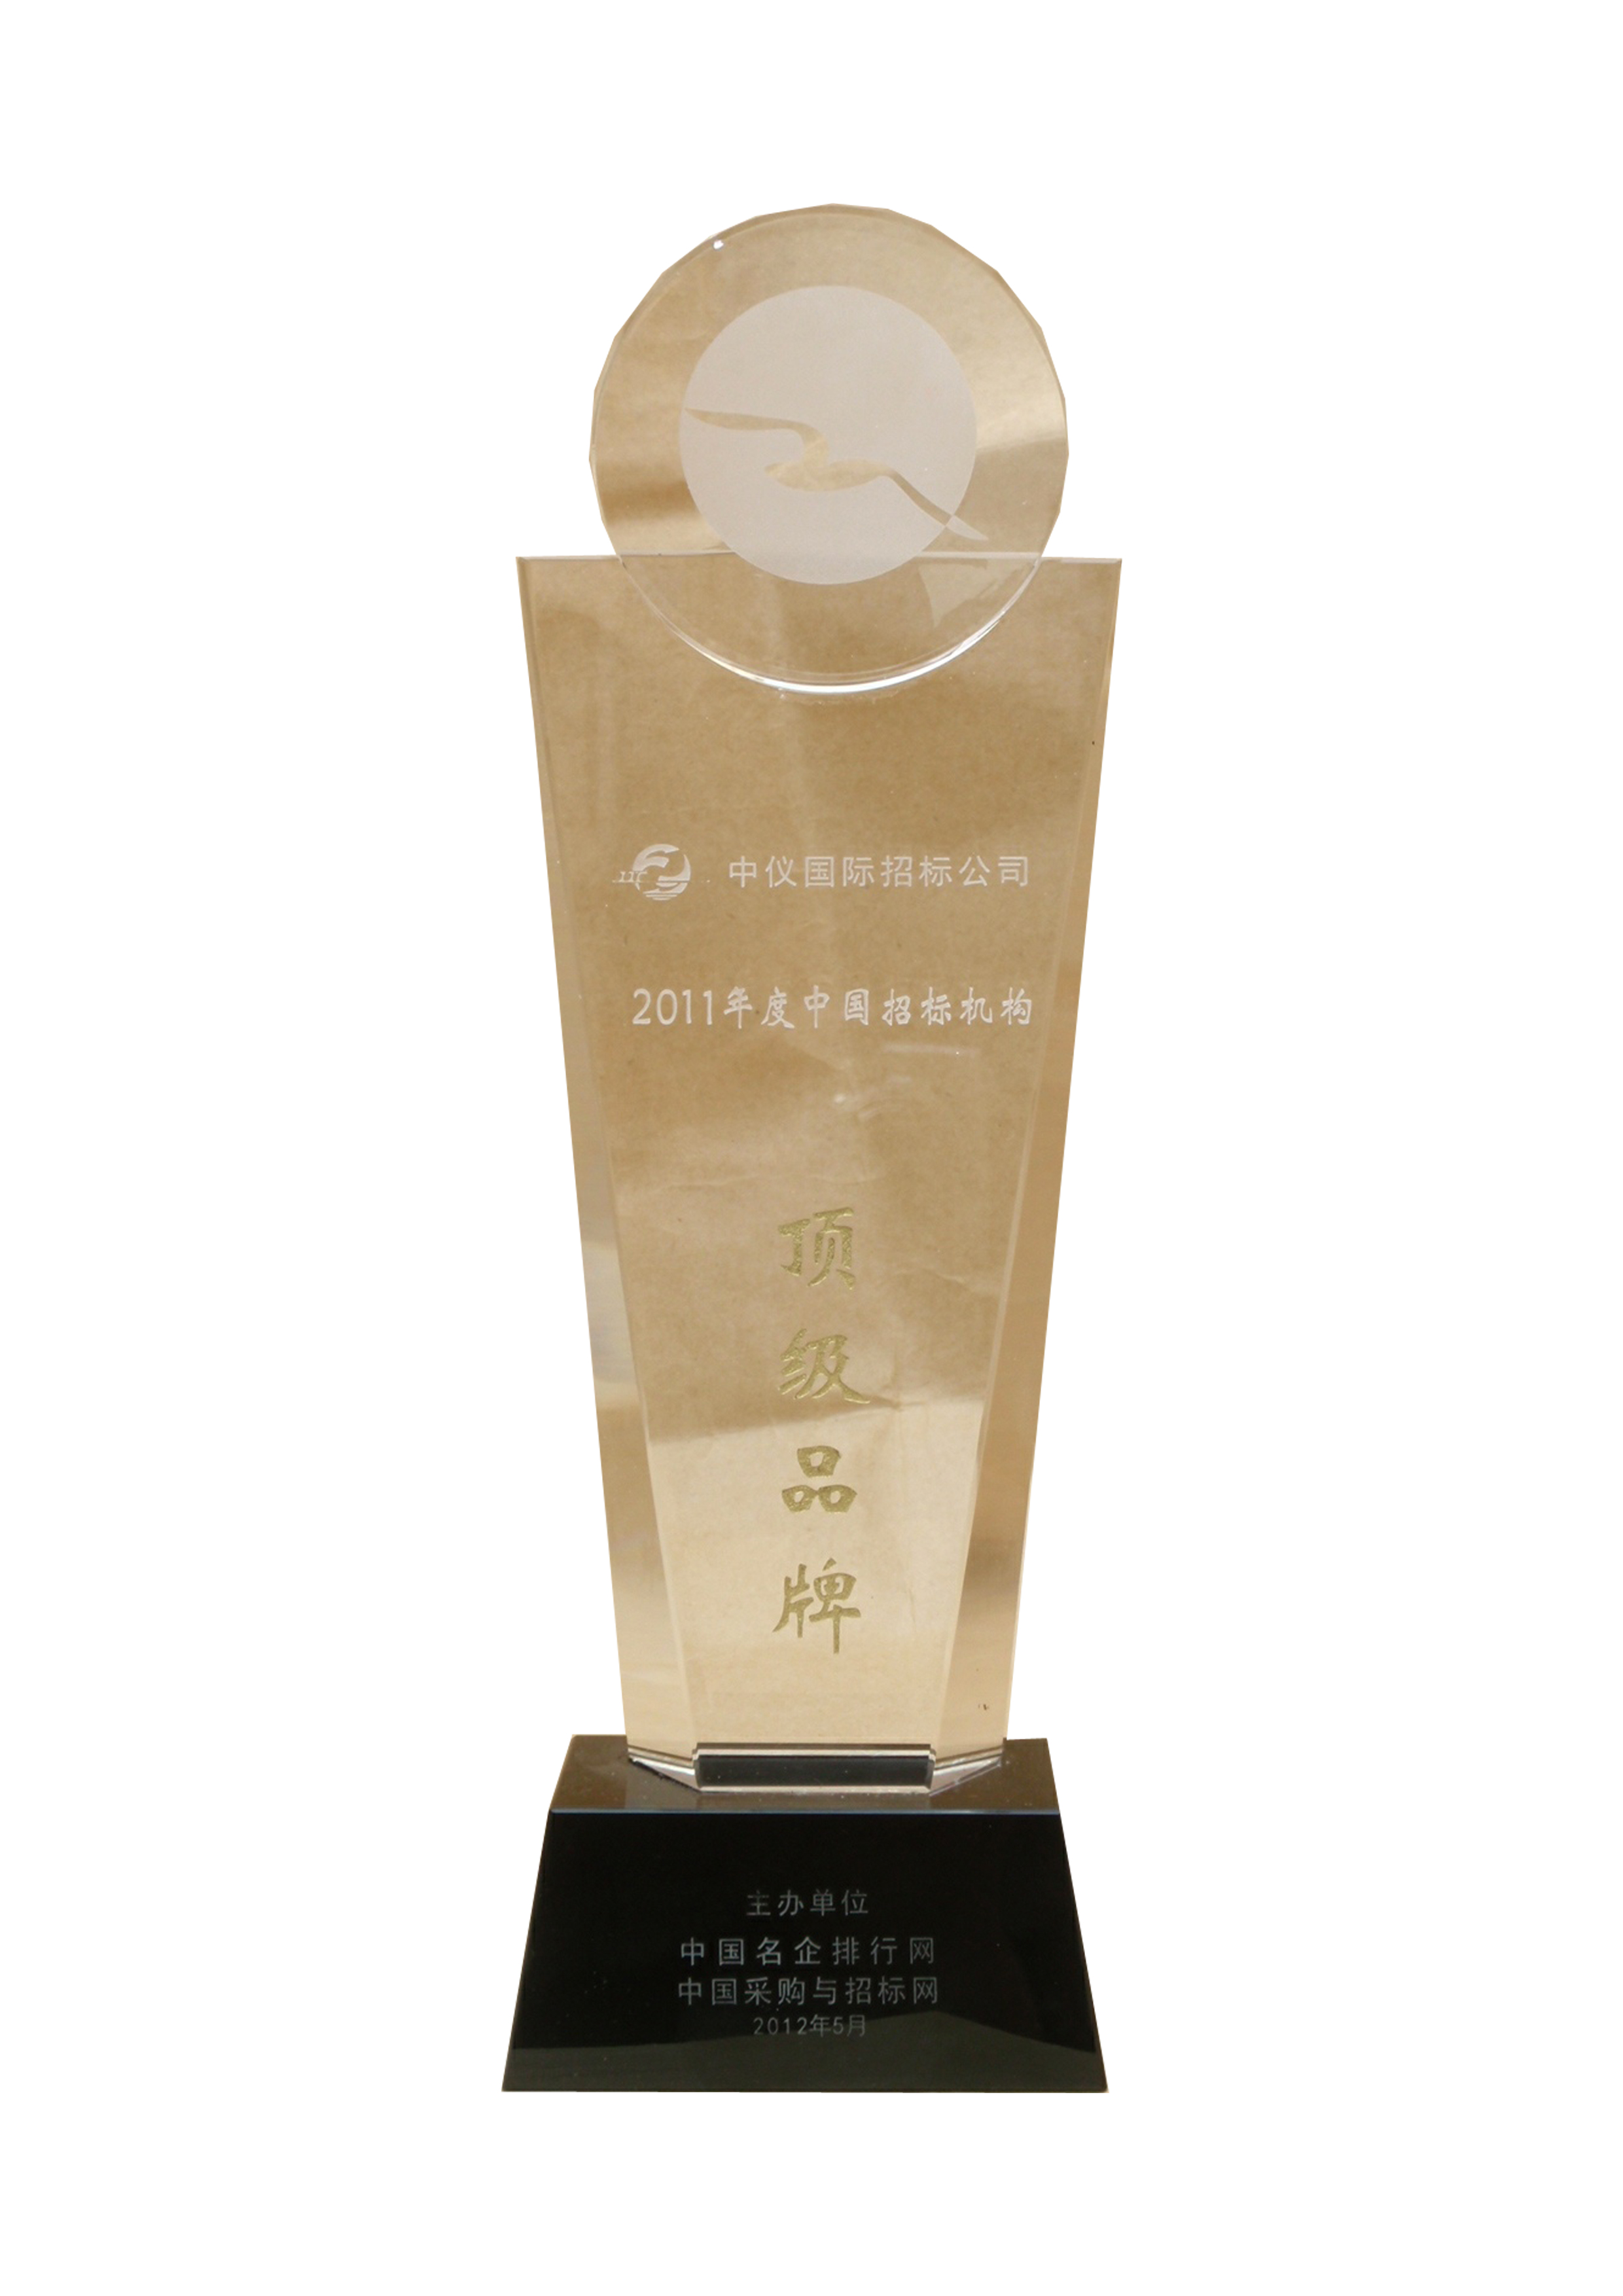 2011年度中国招标机构   顶级品牌